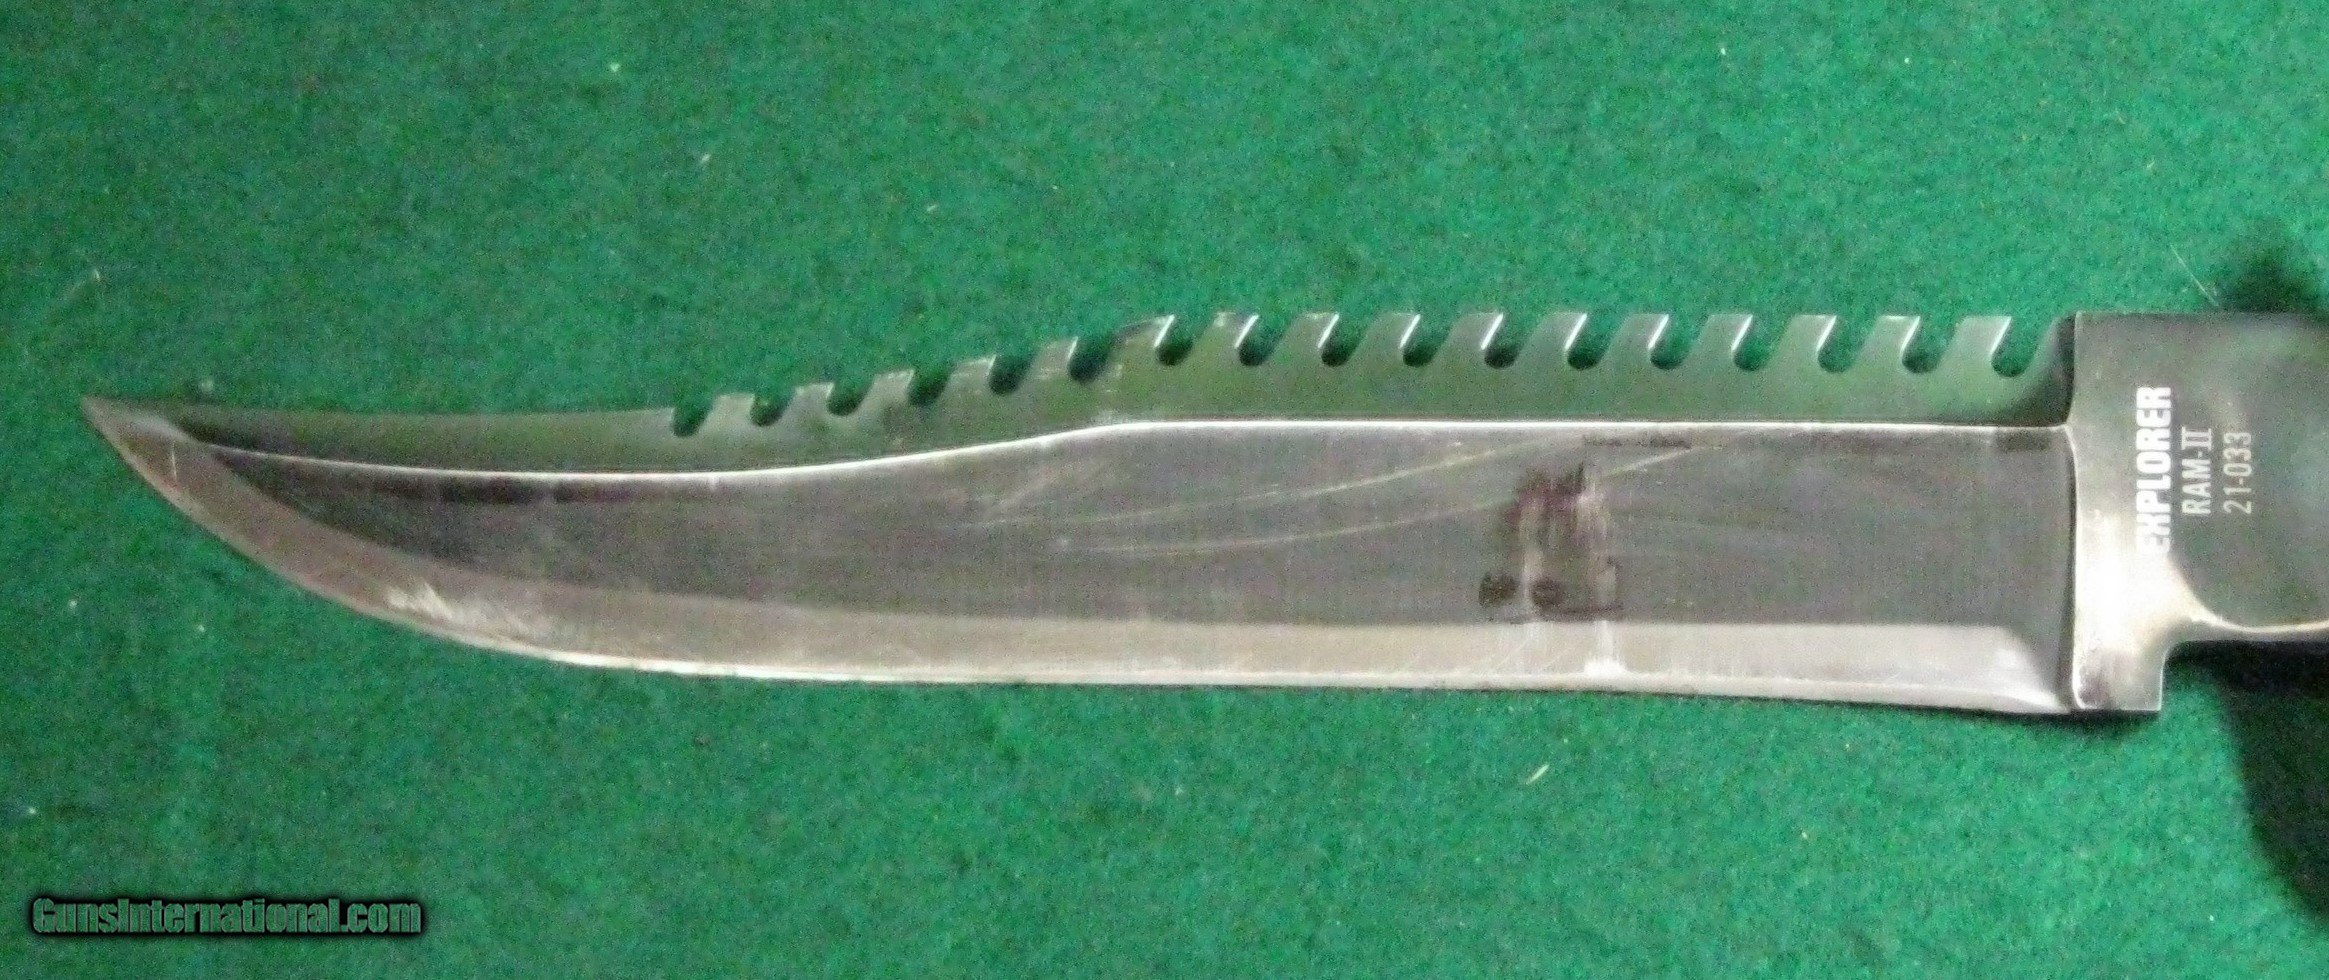 Vintage Explorer Survival Knife Ram II 21-033 Rambo Made In Japan